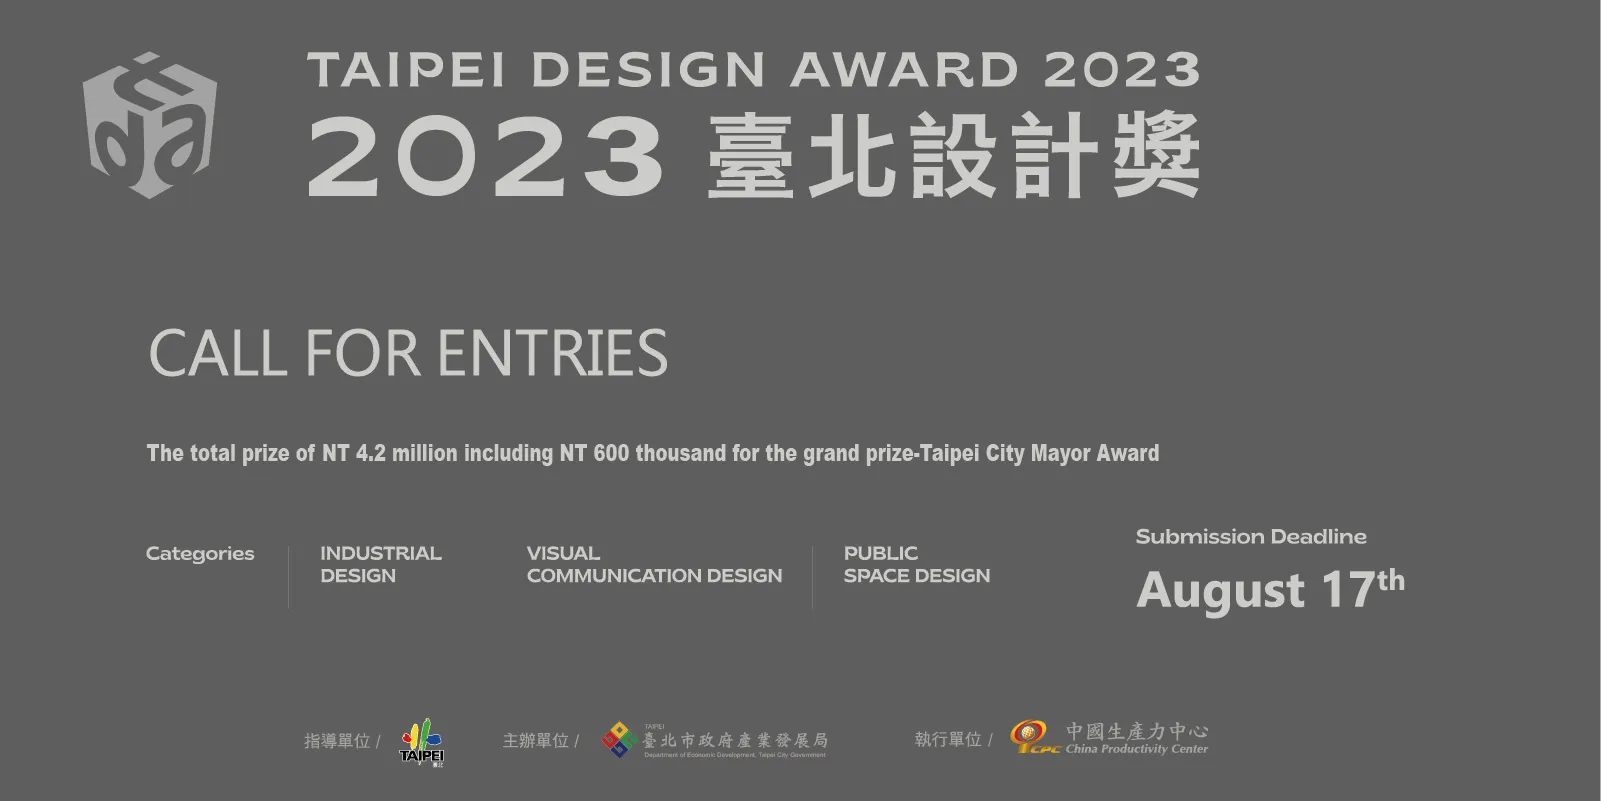 فراخوان جایزه طراحی Taipei (TDA) 2023